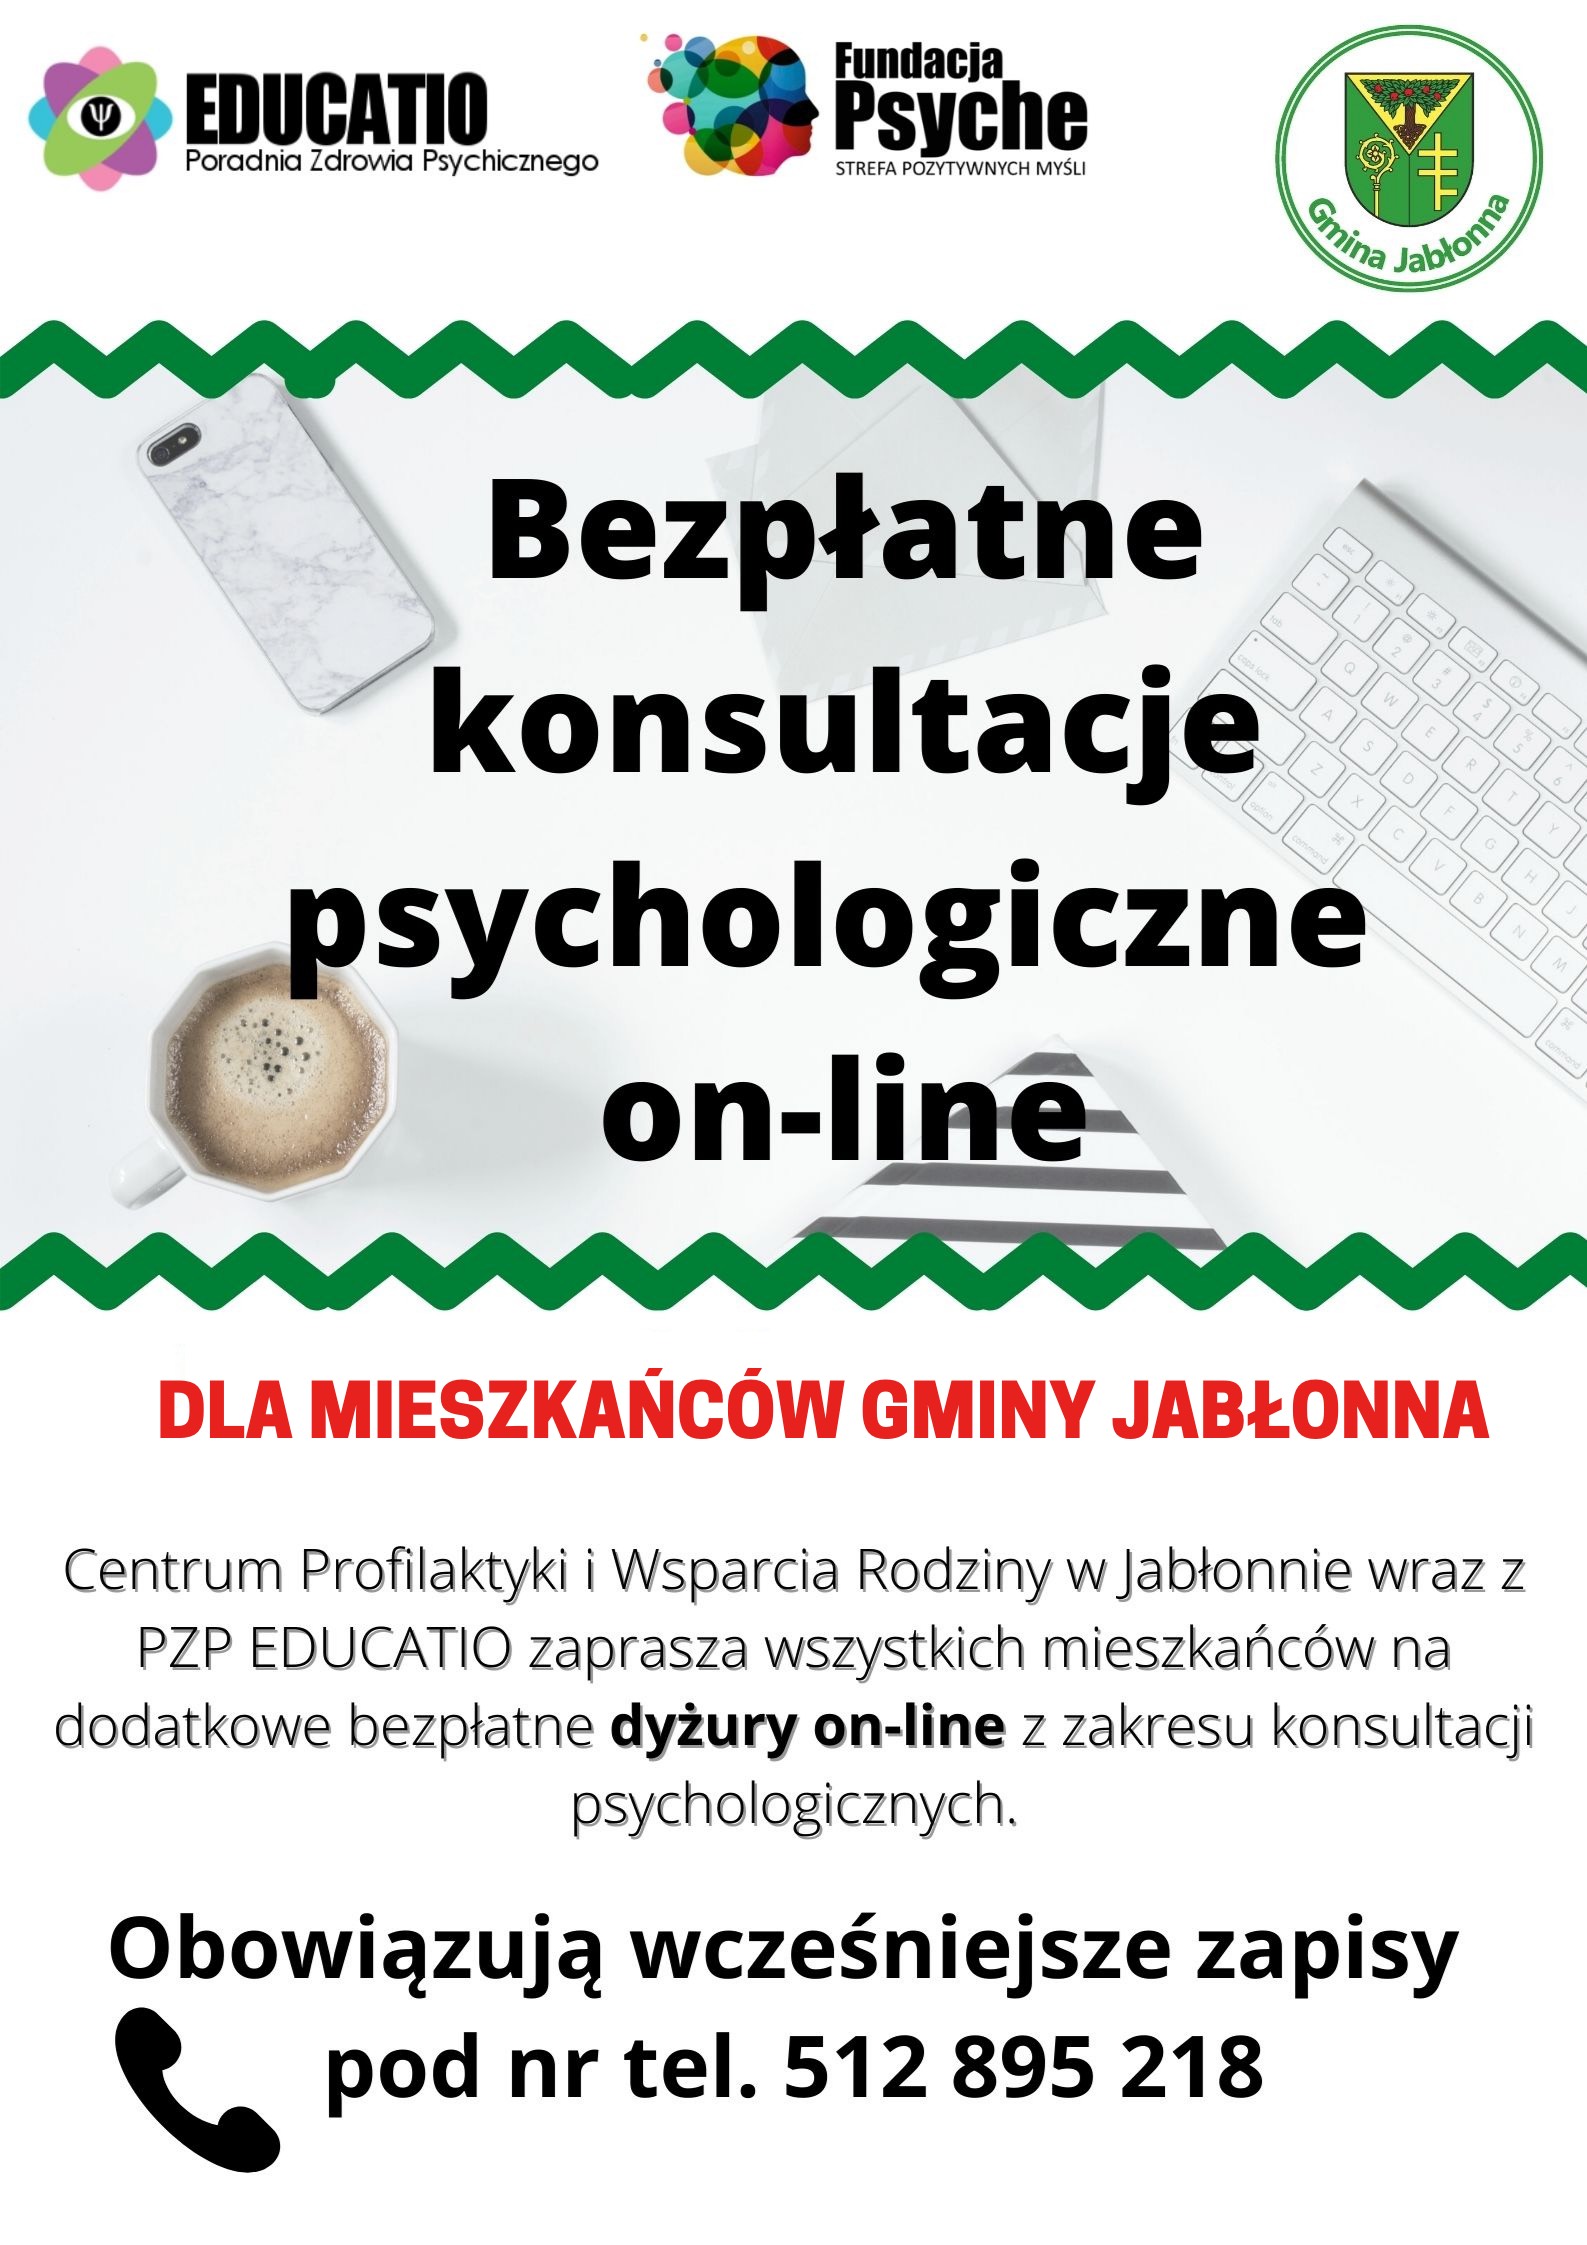 Poradnia Zdrowia Psychicznego EDUCATIO i Gmina Jabłonna zapraszają do skorzystania z bezpłatnych konsultacji psychologicznych on-line dla mieszkańców Gminy Jabłonna. Centrum Profilaktyki i Wsparcia Rodziny w Jabłonnie wraz z PZP EDUCATIO zapraszają wszystkich mieszkańców na dodatkowe bezpłatne dyżury on-line z zakresu konsultacji psychologicznych. Obowiązują wcześniejsze zapisy pod nr tel. 512 895 218